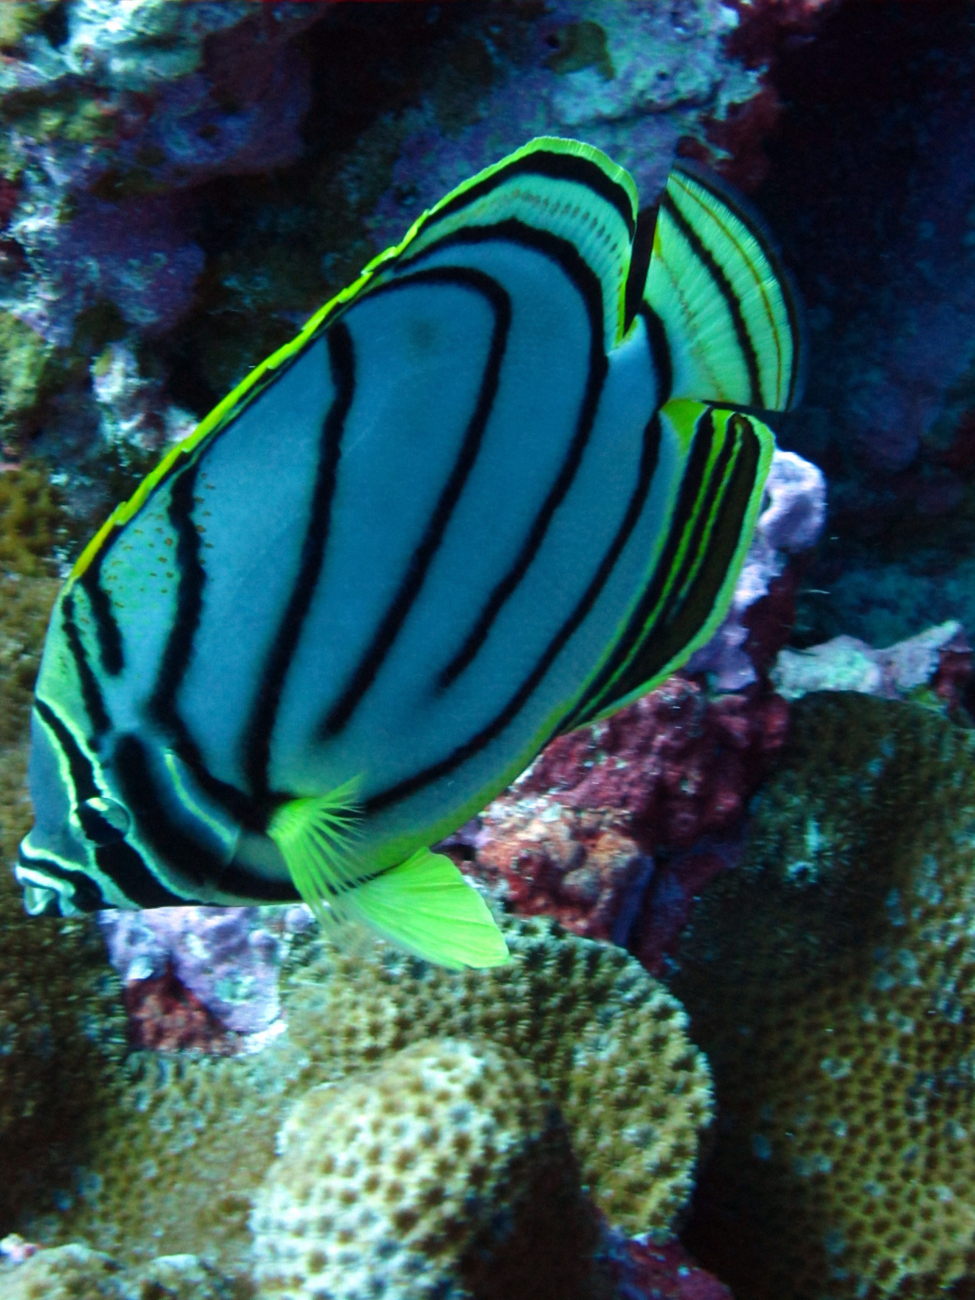 Meyers butterflyfish (Chaetodon meyeri)